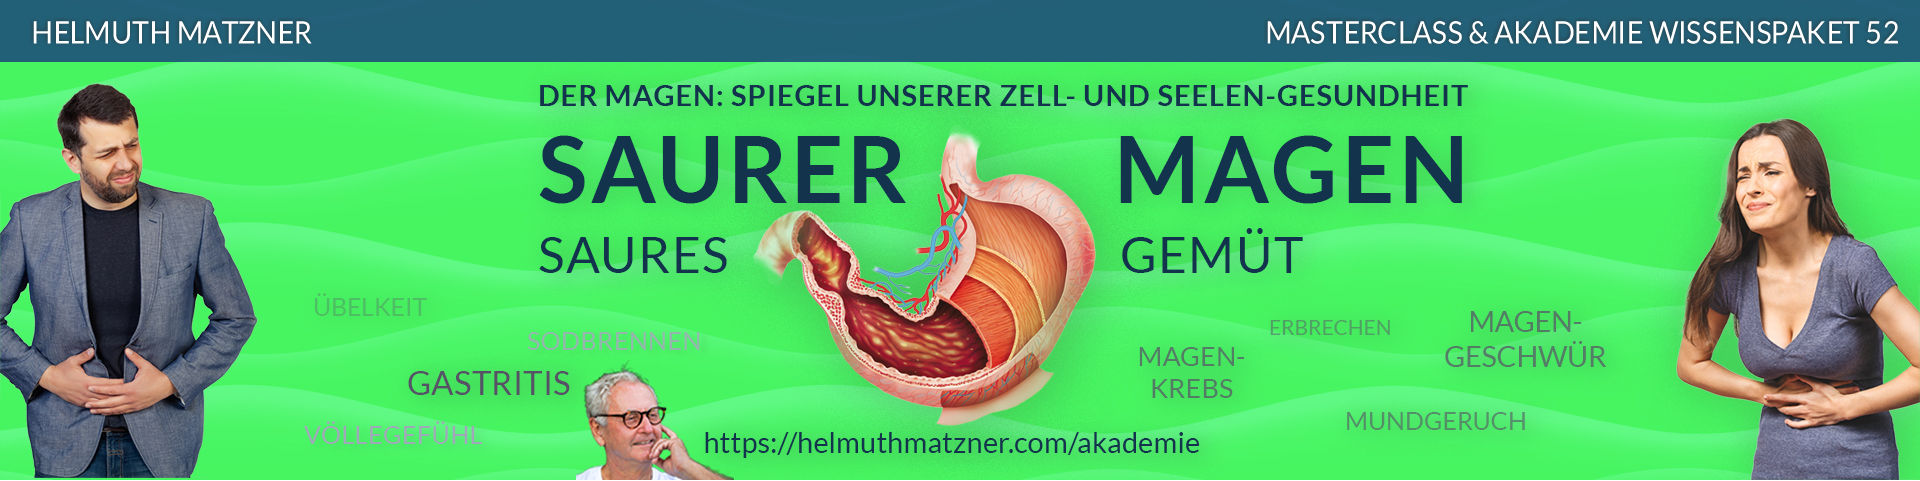 Helmuth Matzner - Masterclass & Akademie Wissenspaket 52 - Magen - LP-Banner v09B